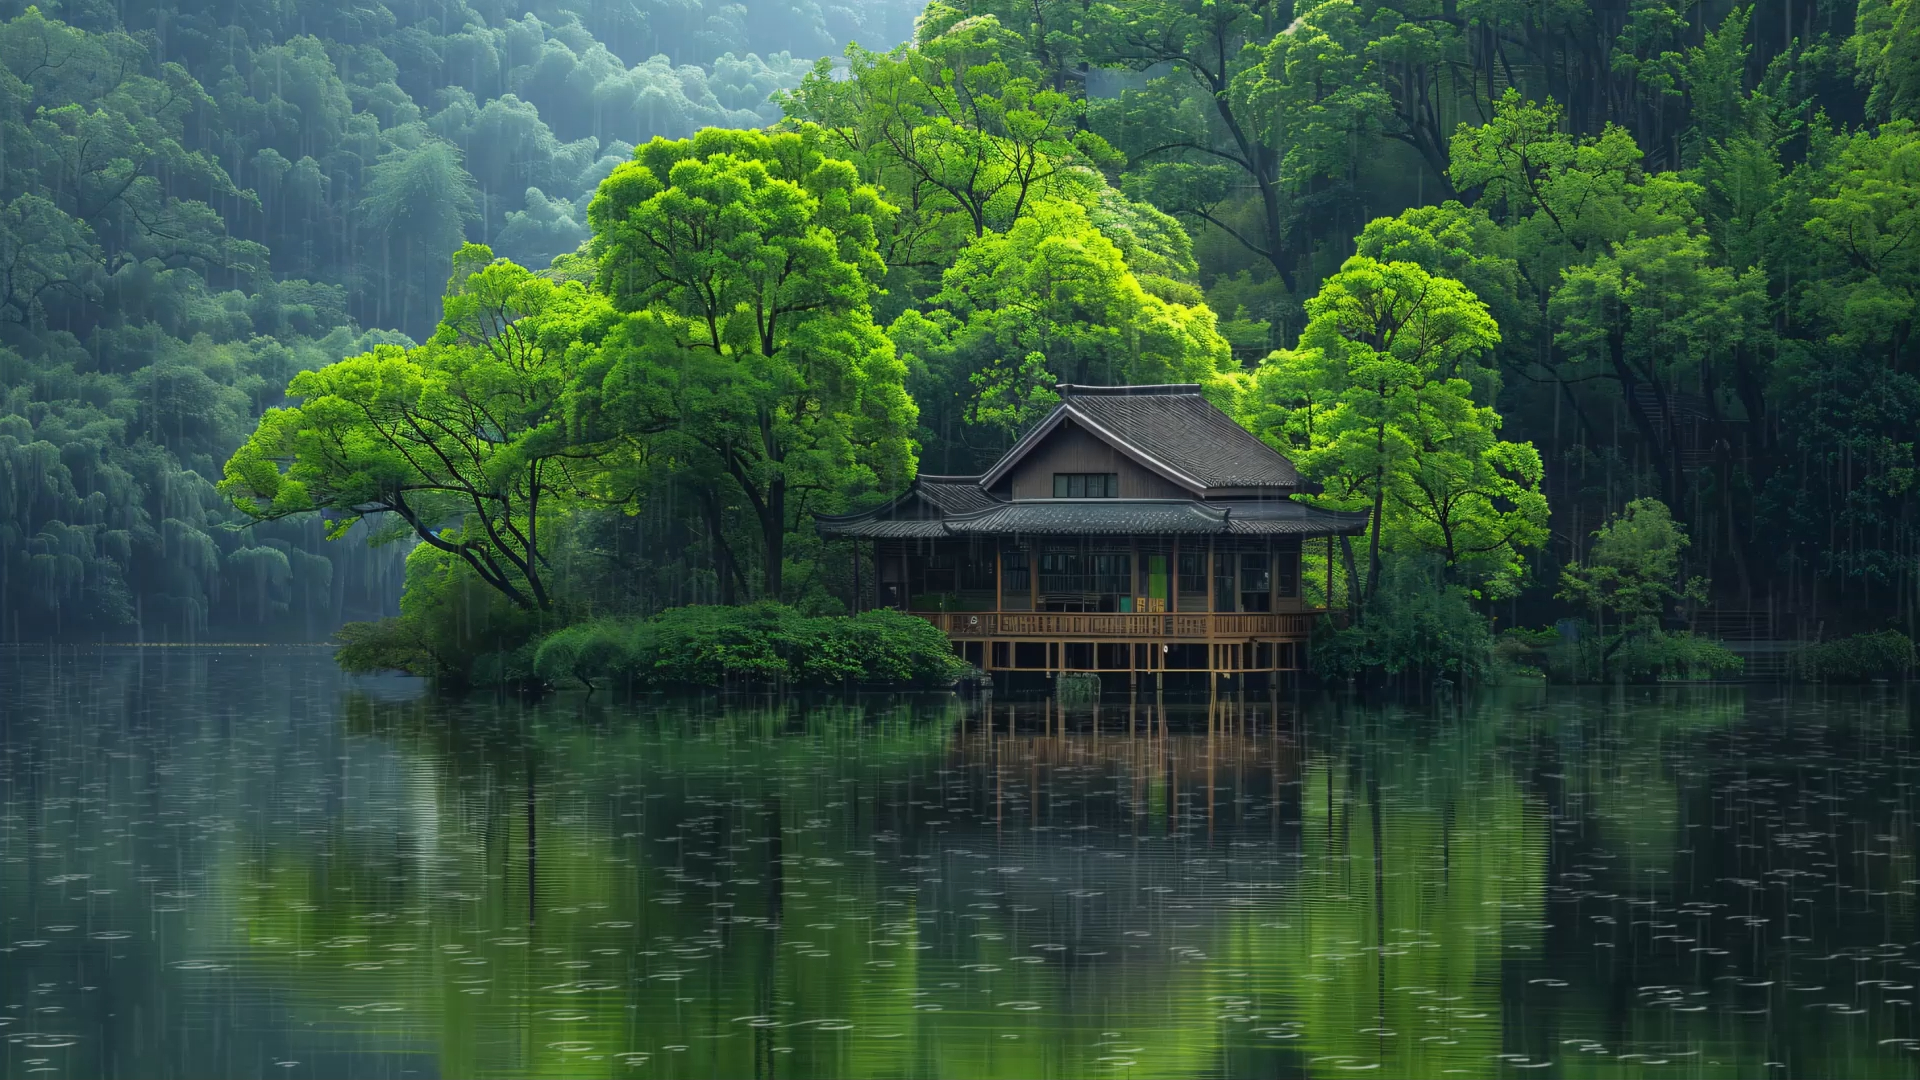 湖水旁的木屋，努力保持颗平静的心，让心中盈满一片澄澈平静的湖丨白噪音 雨声 放松解压 失眠助眠 缓解焦虑 学习 工作丨